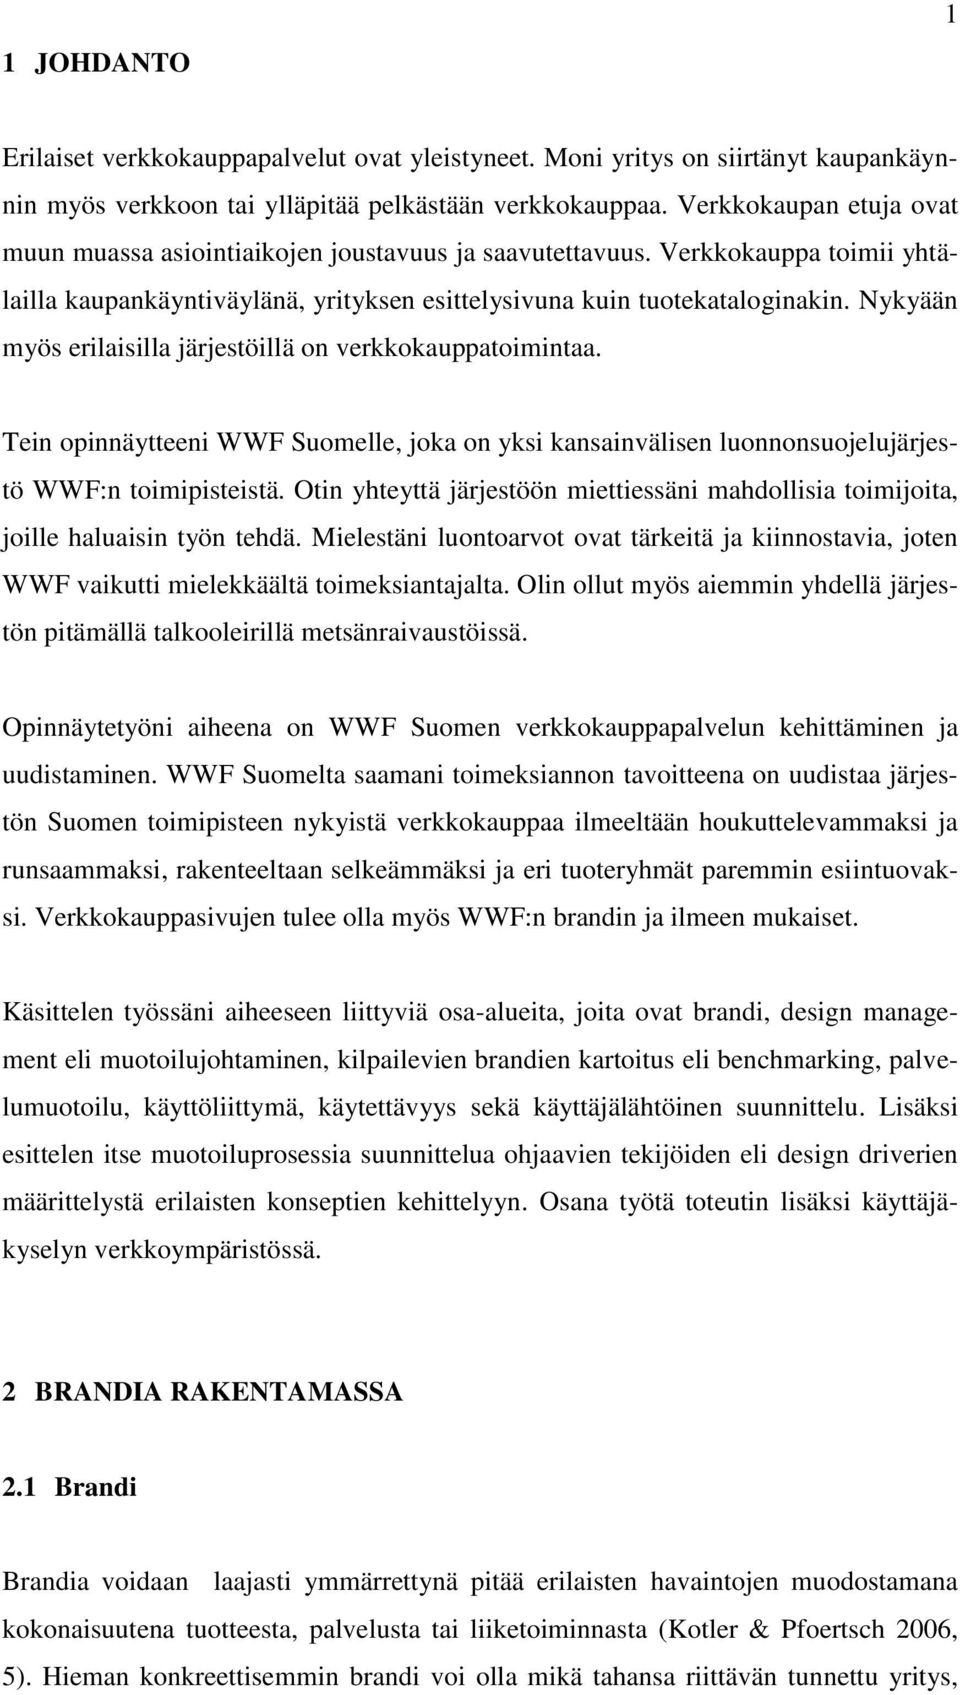 Nykyään myös erilaisilla järjestöillä on verkkokauppatoimintaa. Tein opinnäytteeni WWF Suomelle, joka on yksi kansainvälisen luonnonsuojelujärjestö WWF:n toimipisteistä.